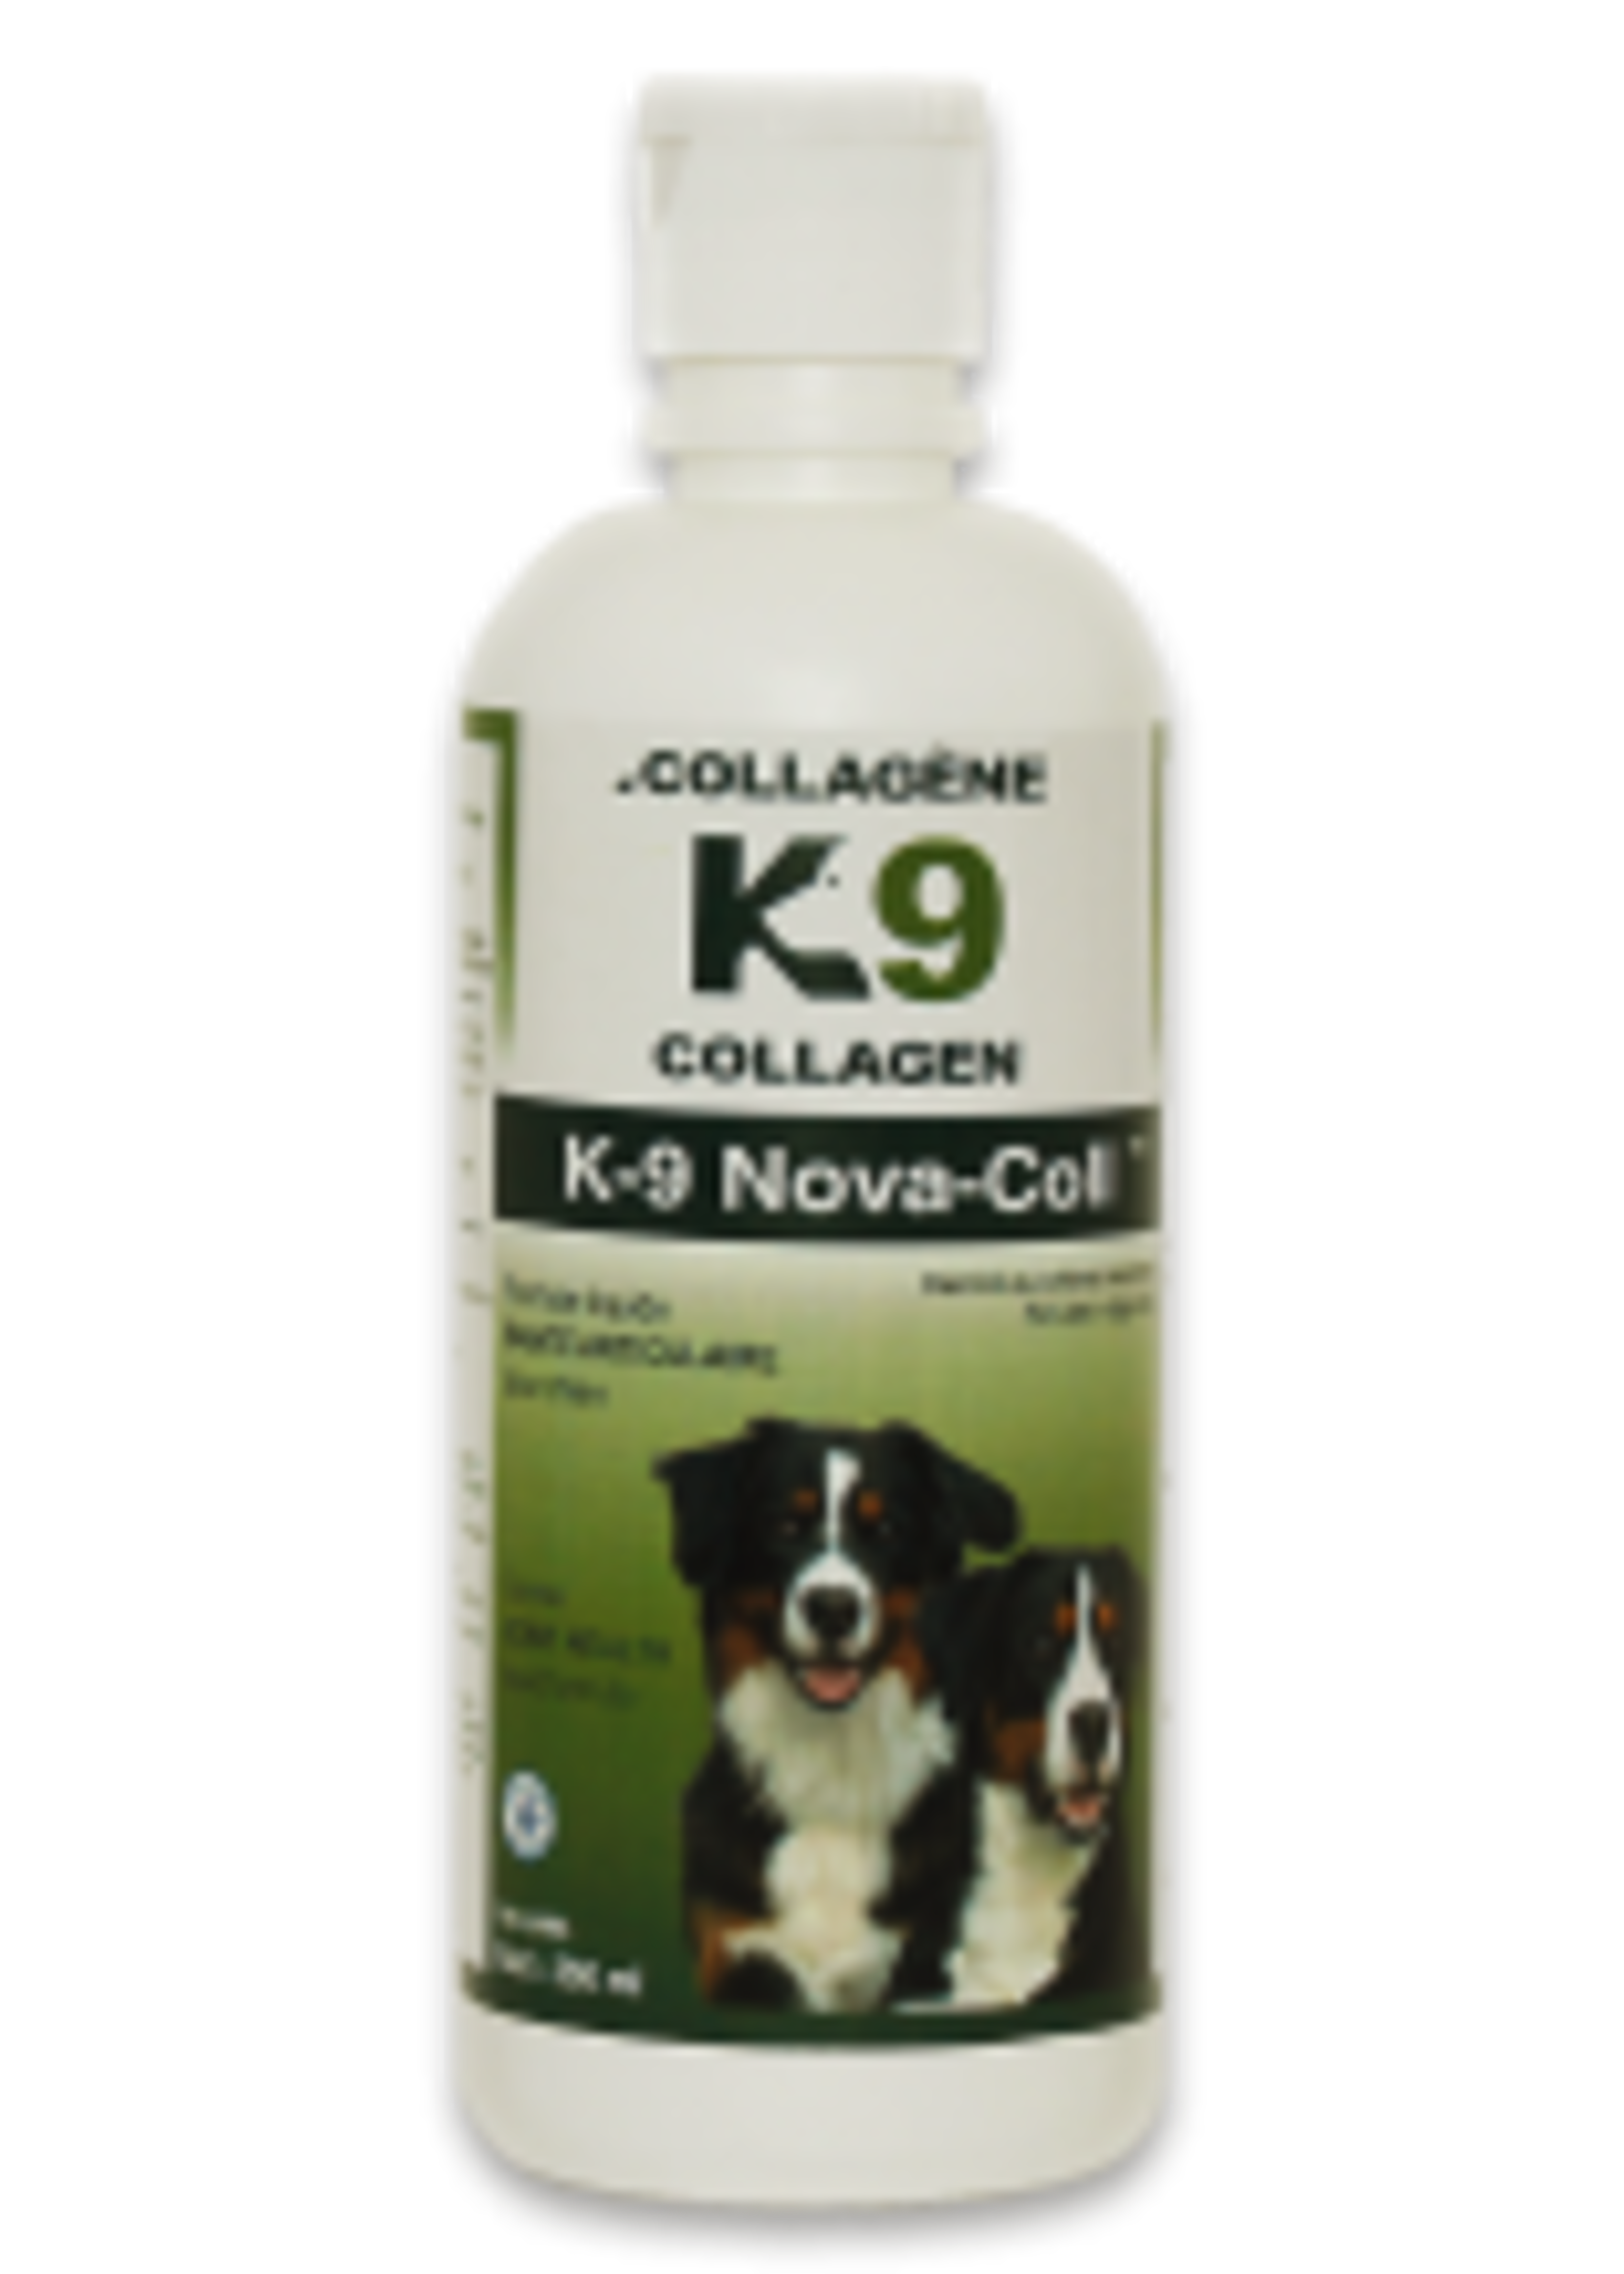 K9 Collagen arthri-coll 250 ml K9